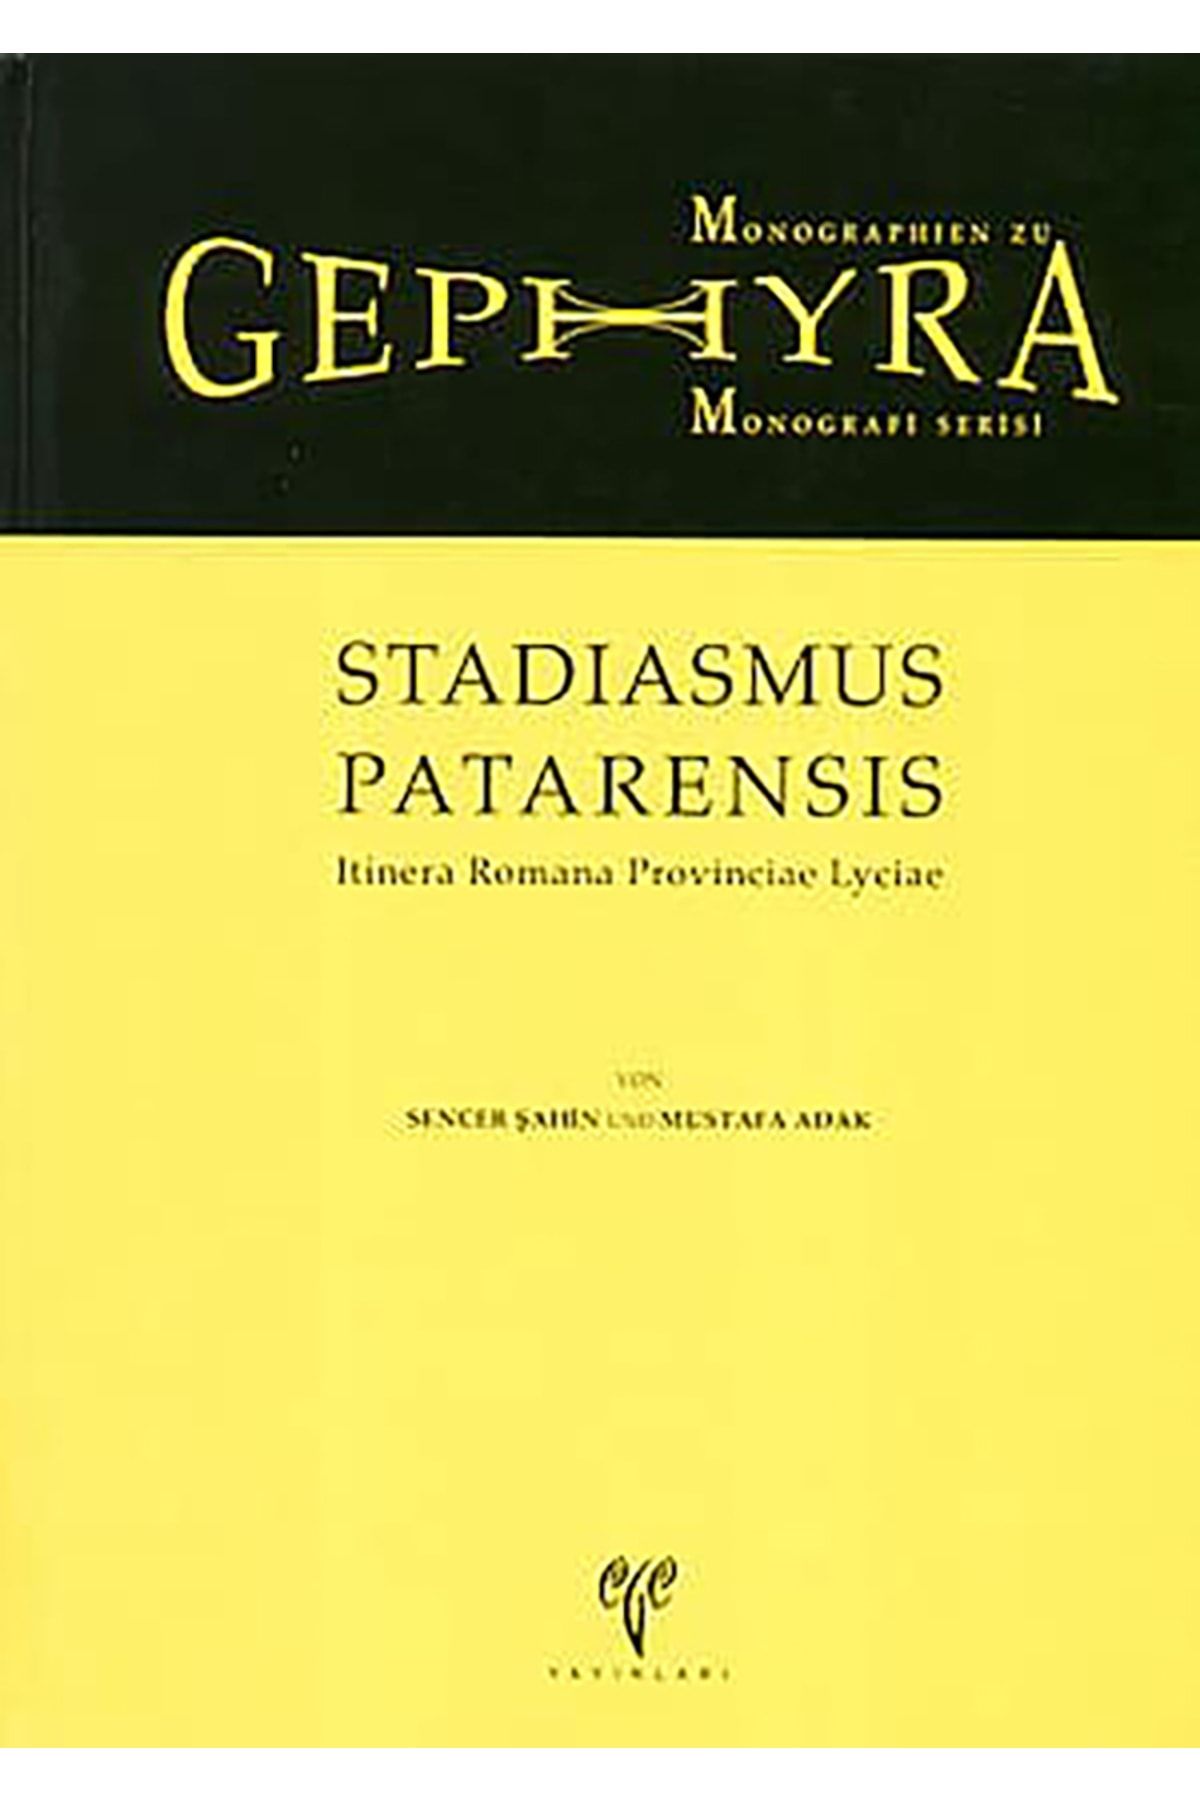 Ege Yayınları Gephyra Monografi Serisi Stadiasmus Patarensis Itinera Romana Provinciae Lyciae